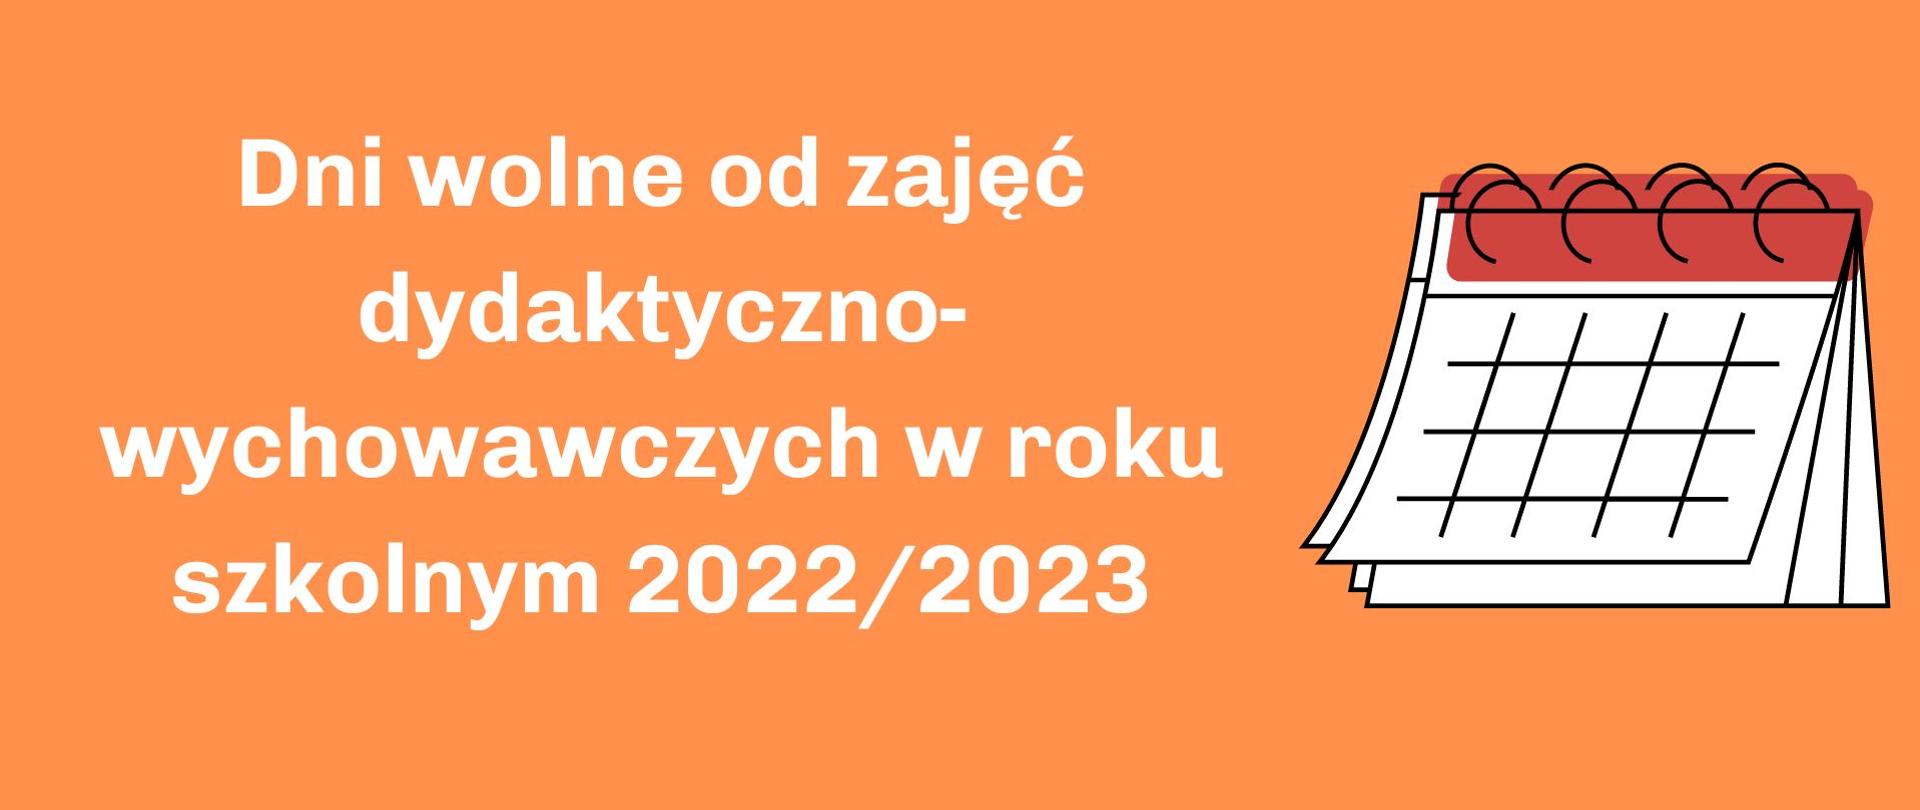 Dni wolne od zajęć dydaktyczno-wychowawczych w roku szkolnym 2022/2023